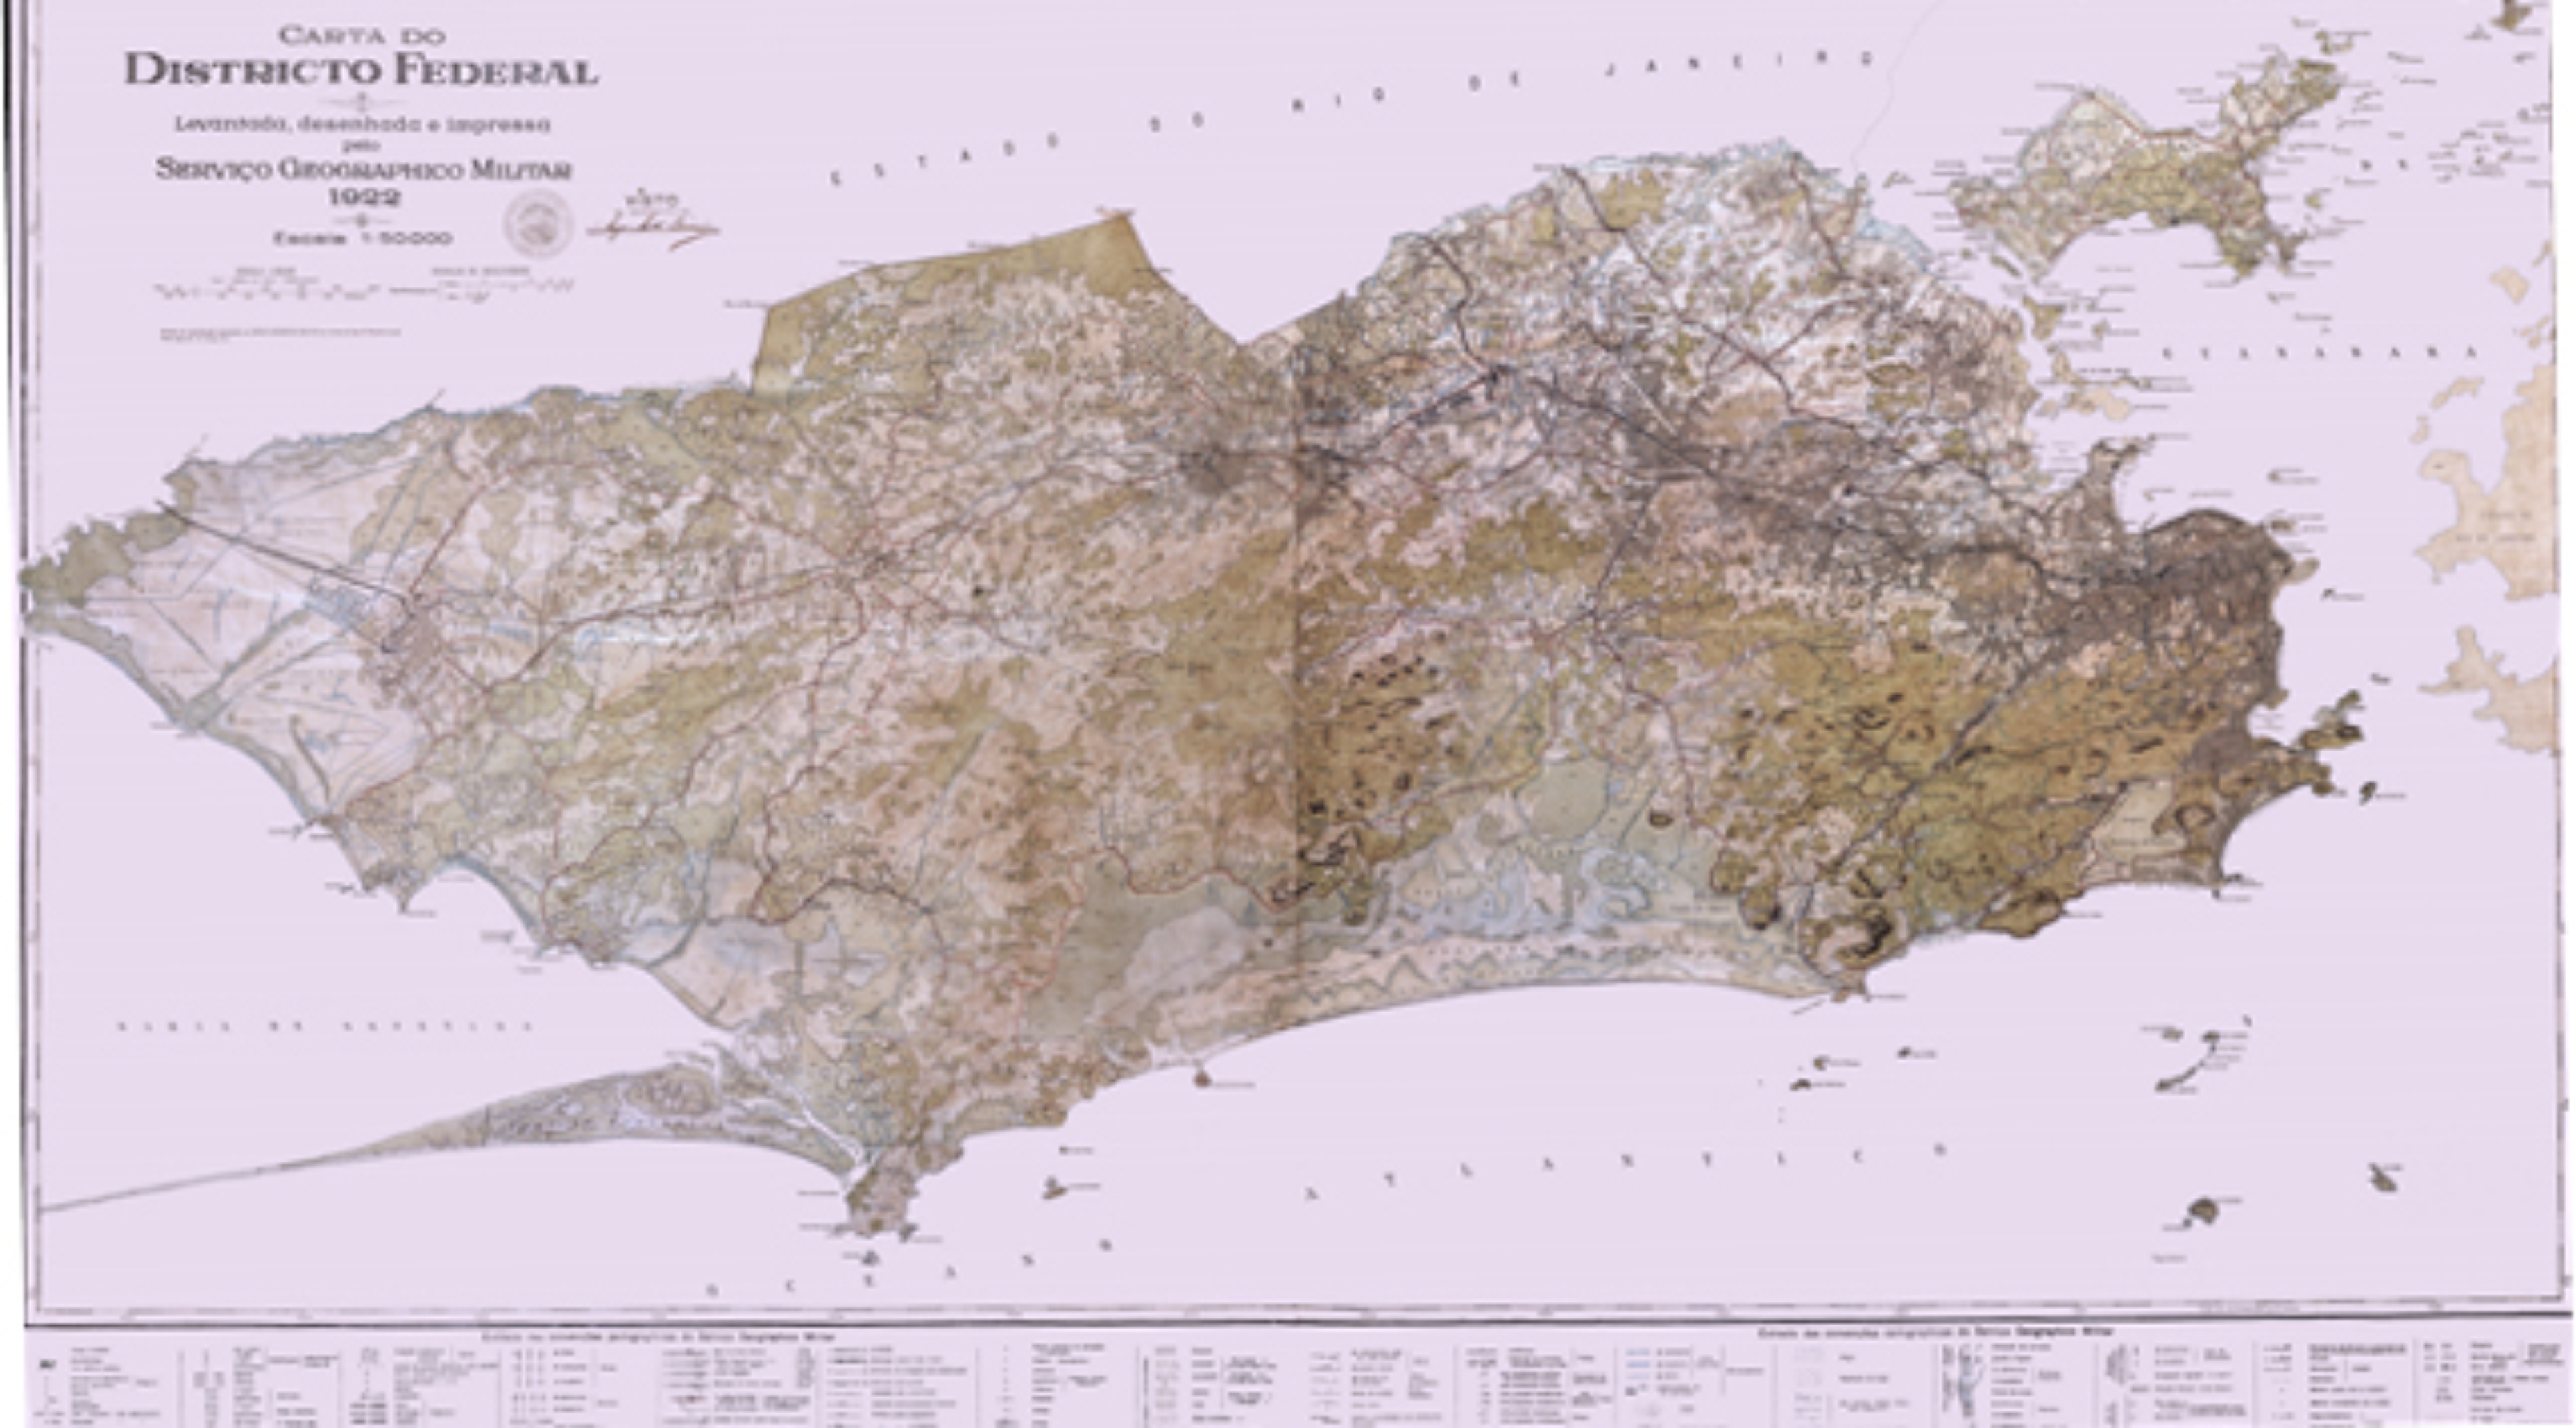 Foto do Carta Topográfica do Districto Federal, hoje Município do Rio de Janeiro.